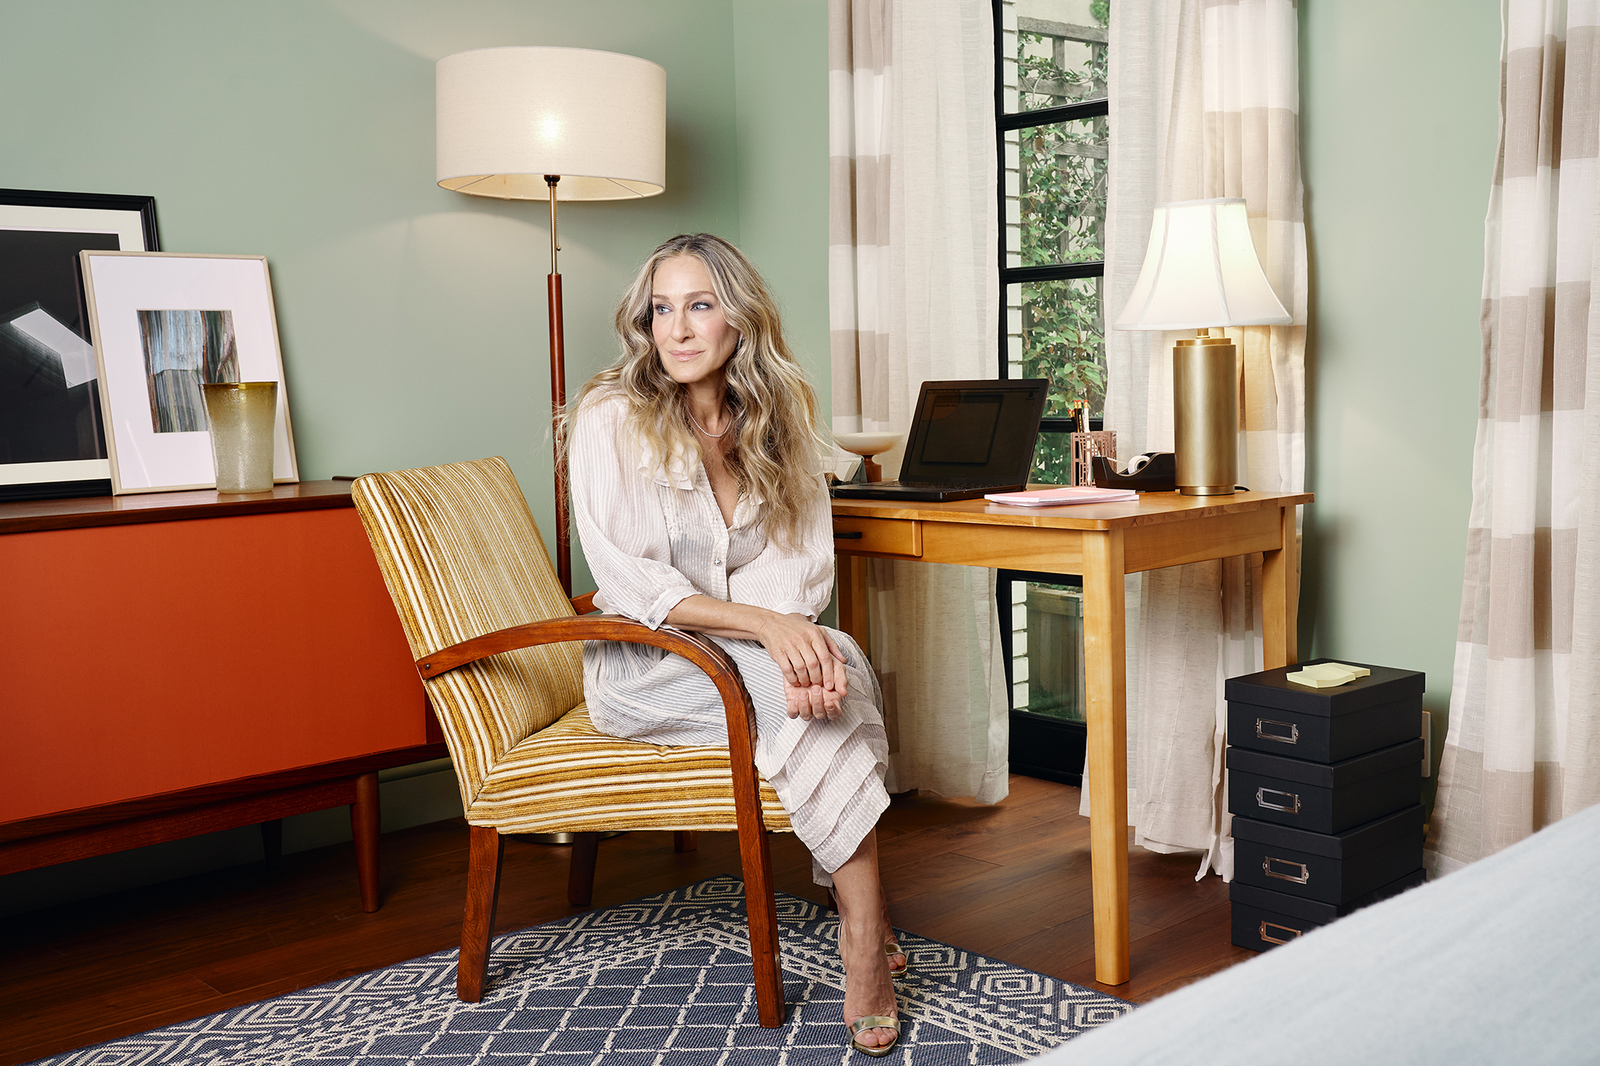 Apartamentul lui Carrie Bradshaw din „Sex and the City”, disponibil pe Airbnb. Cât costă o noapte de cazare? (FOTO)